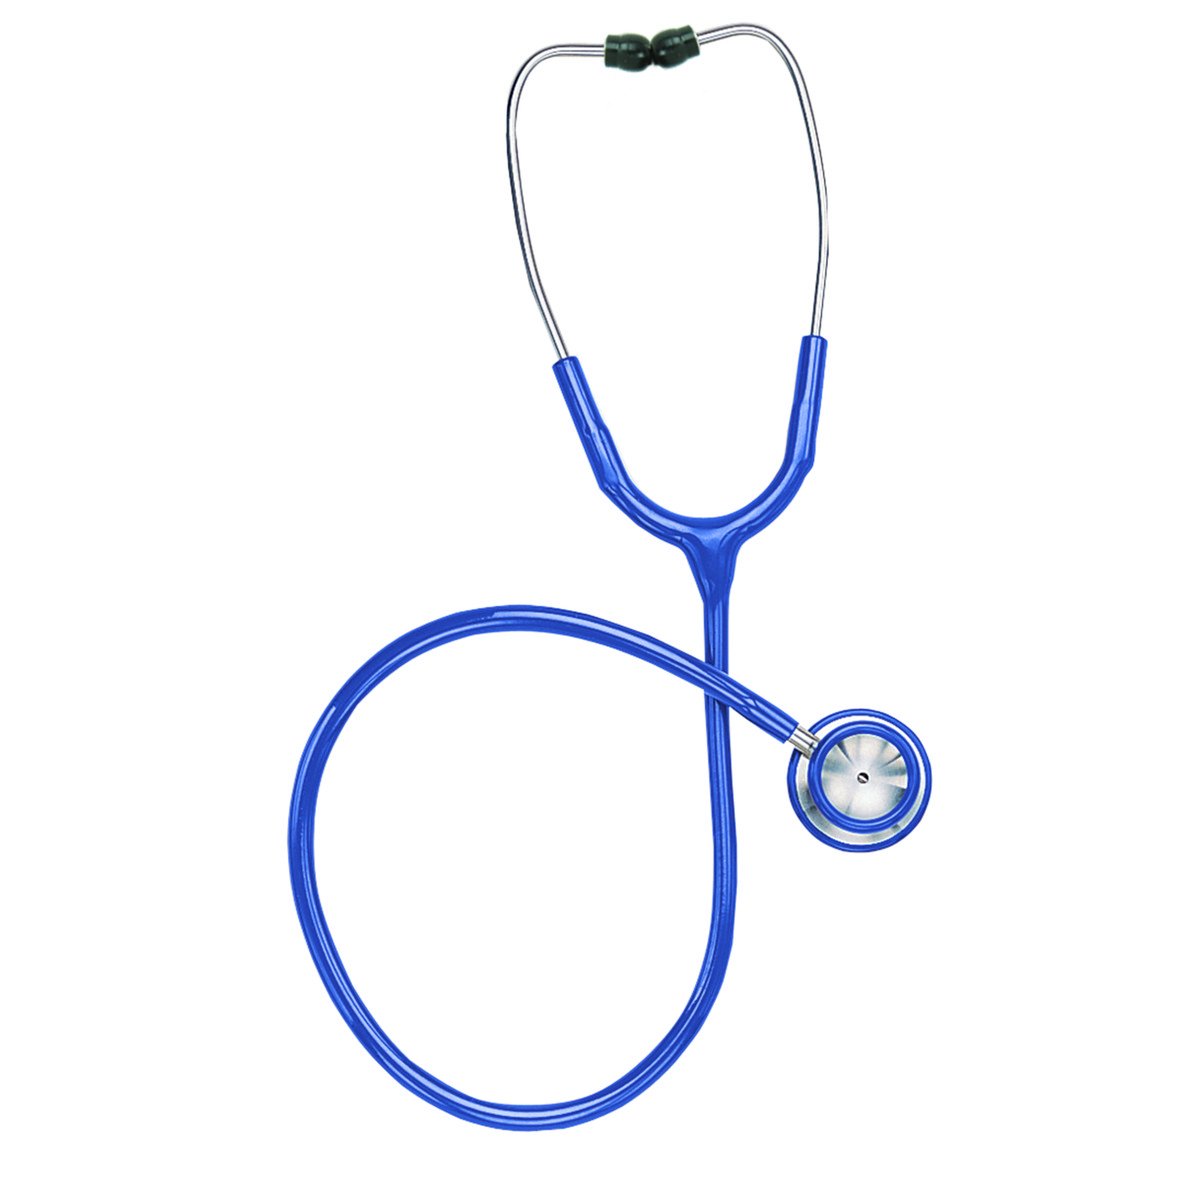 Stethoscopes - High Quality Professional Grade - Caregiver Aids - Senior.com